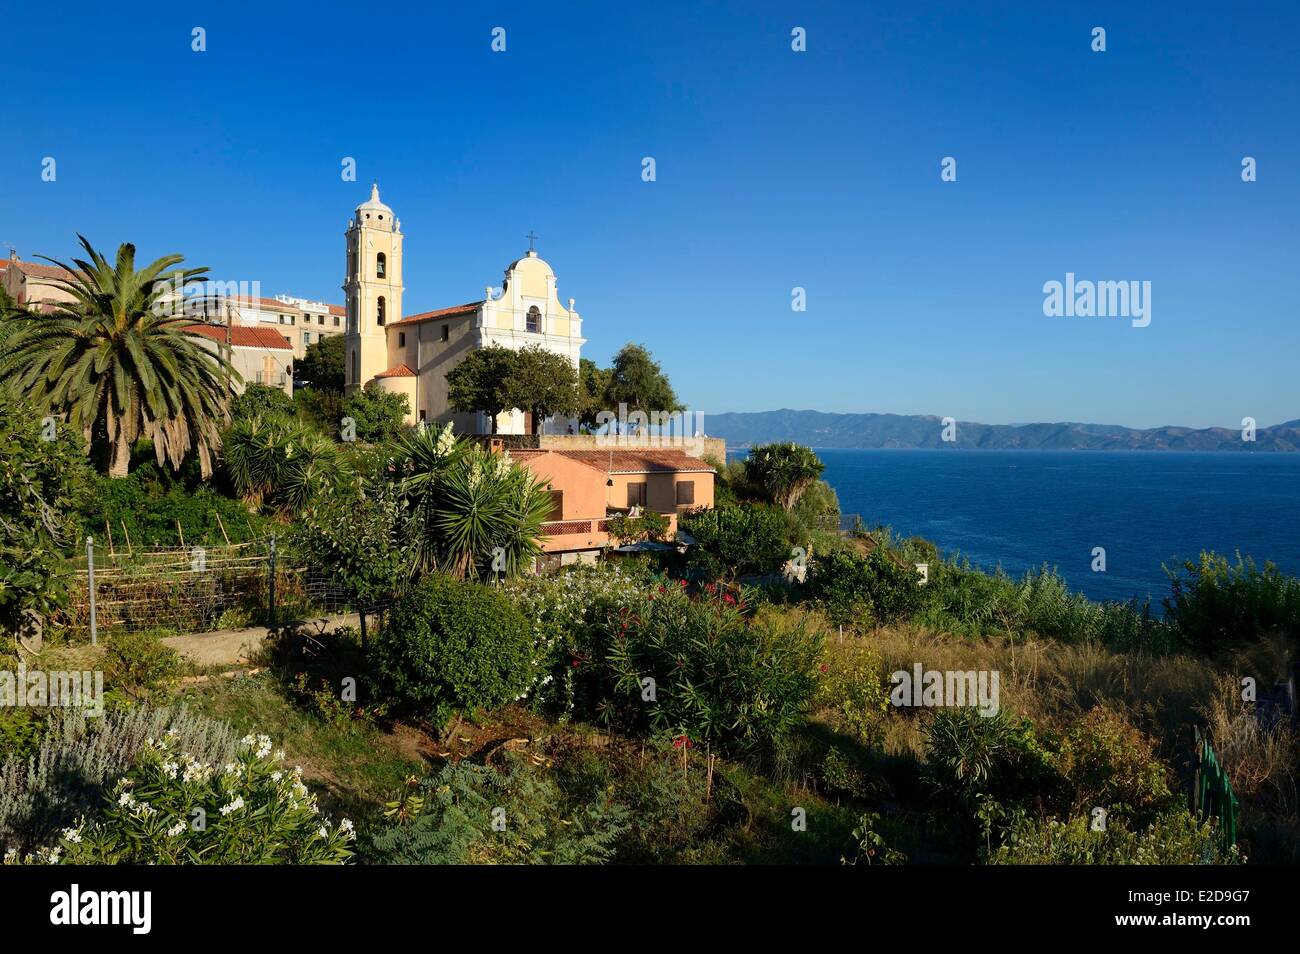 Francia, Corse du Sud, Cargese, chiesa cattolica (di rito latino) costruita nel XIX secolo su una terrazza a strapiombo sul golfo di Sagone Foto Stock